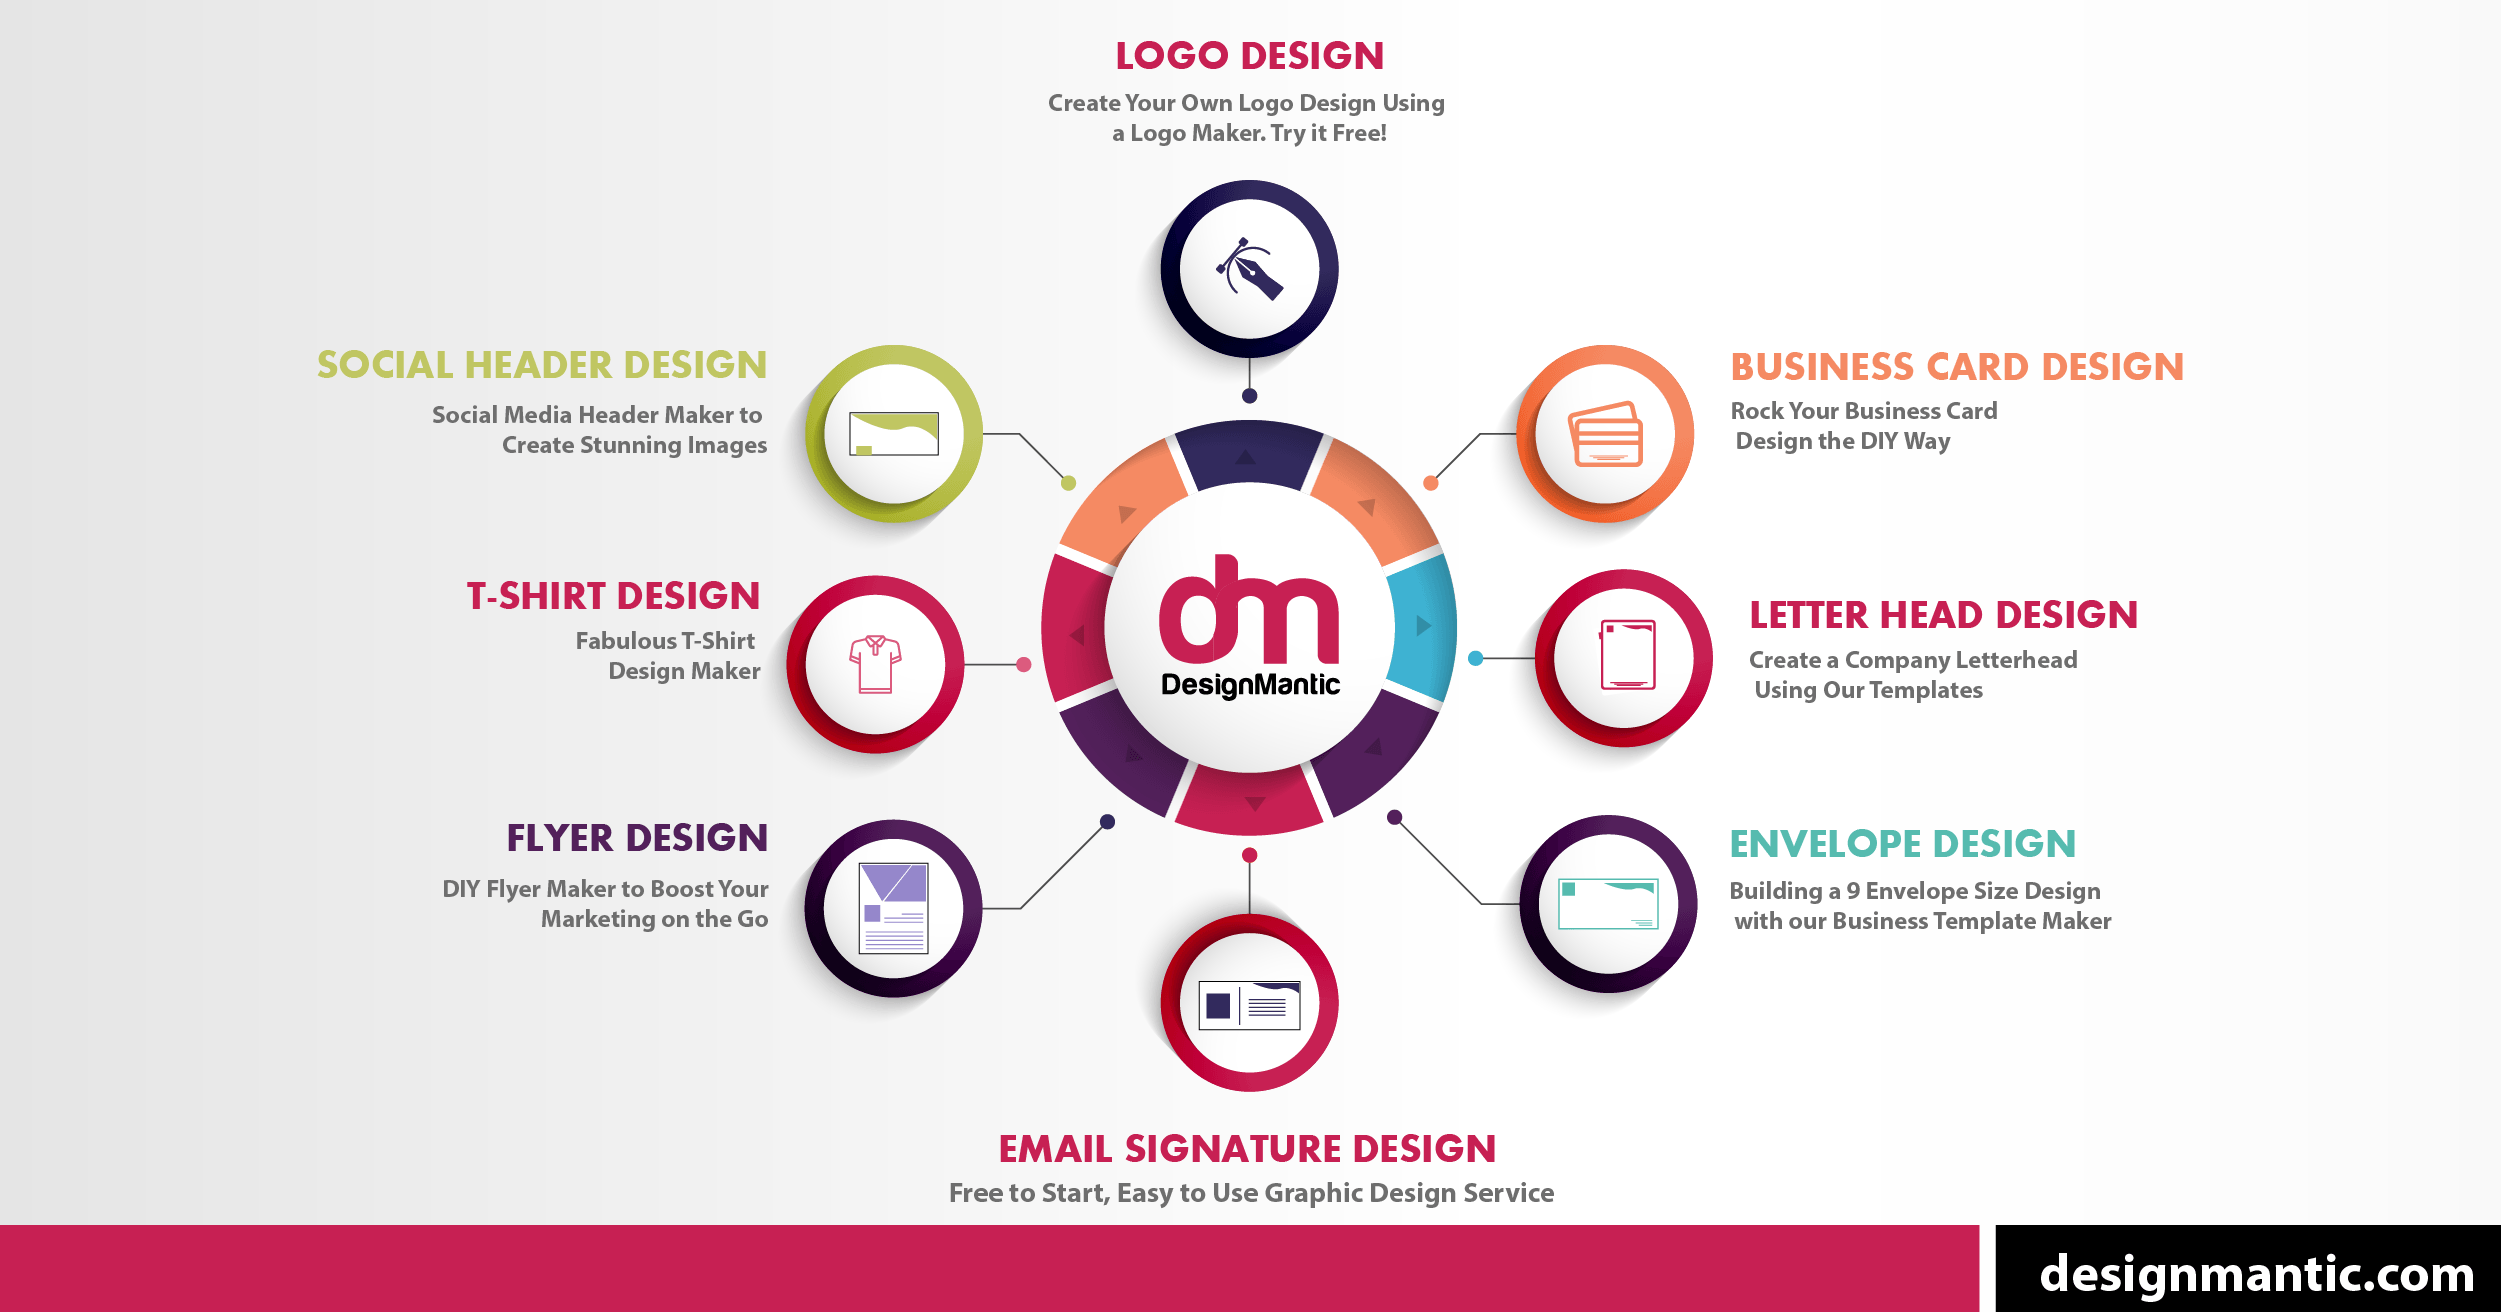 Cards Logo - Logo Design Using AI Logo Maker Tool | DesignMantic: The Design Shop